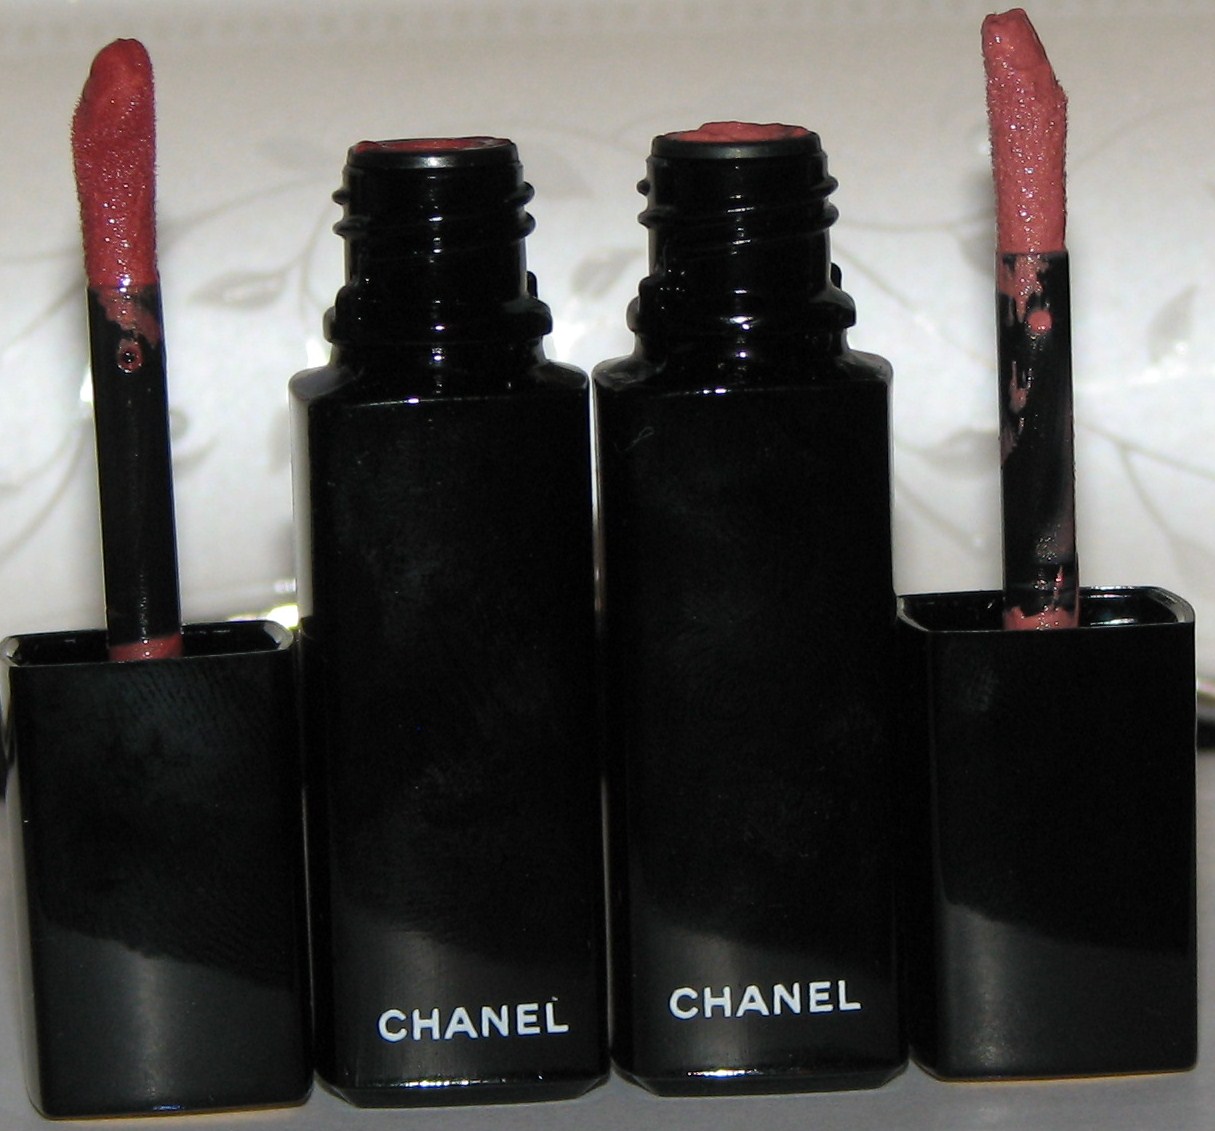 Chanel Rouge Allure Laque Ultrawear Shine Liquid Lip Colour - 70